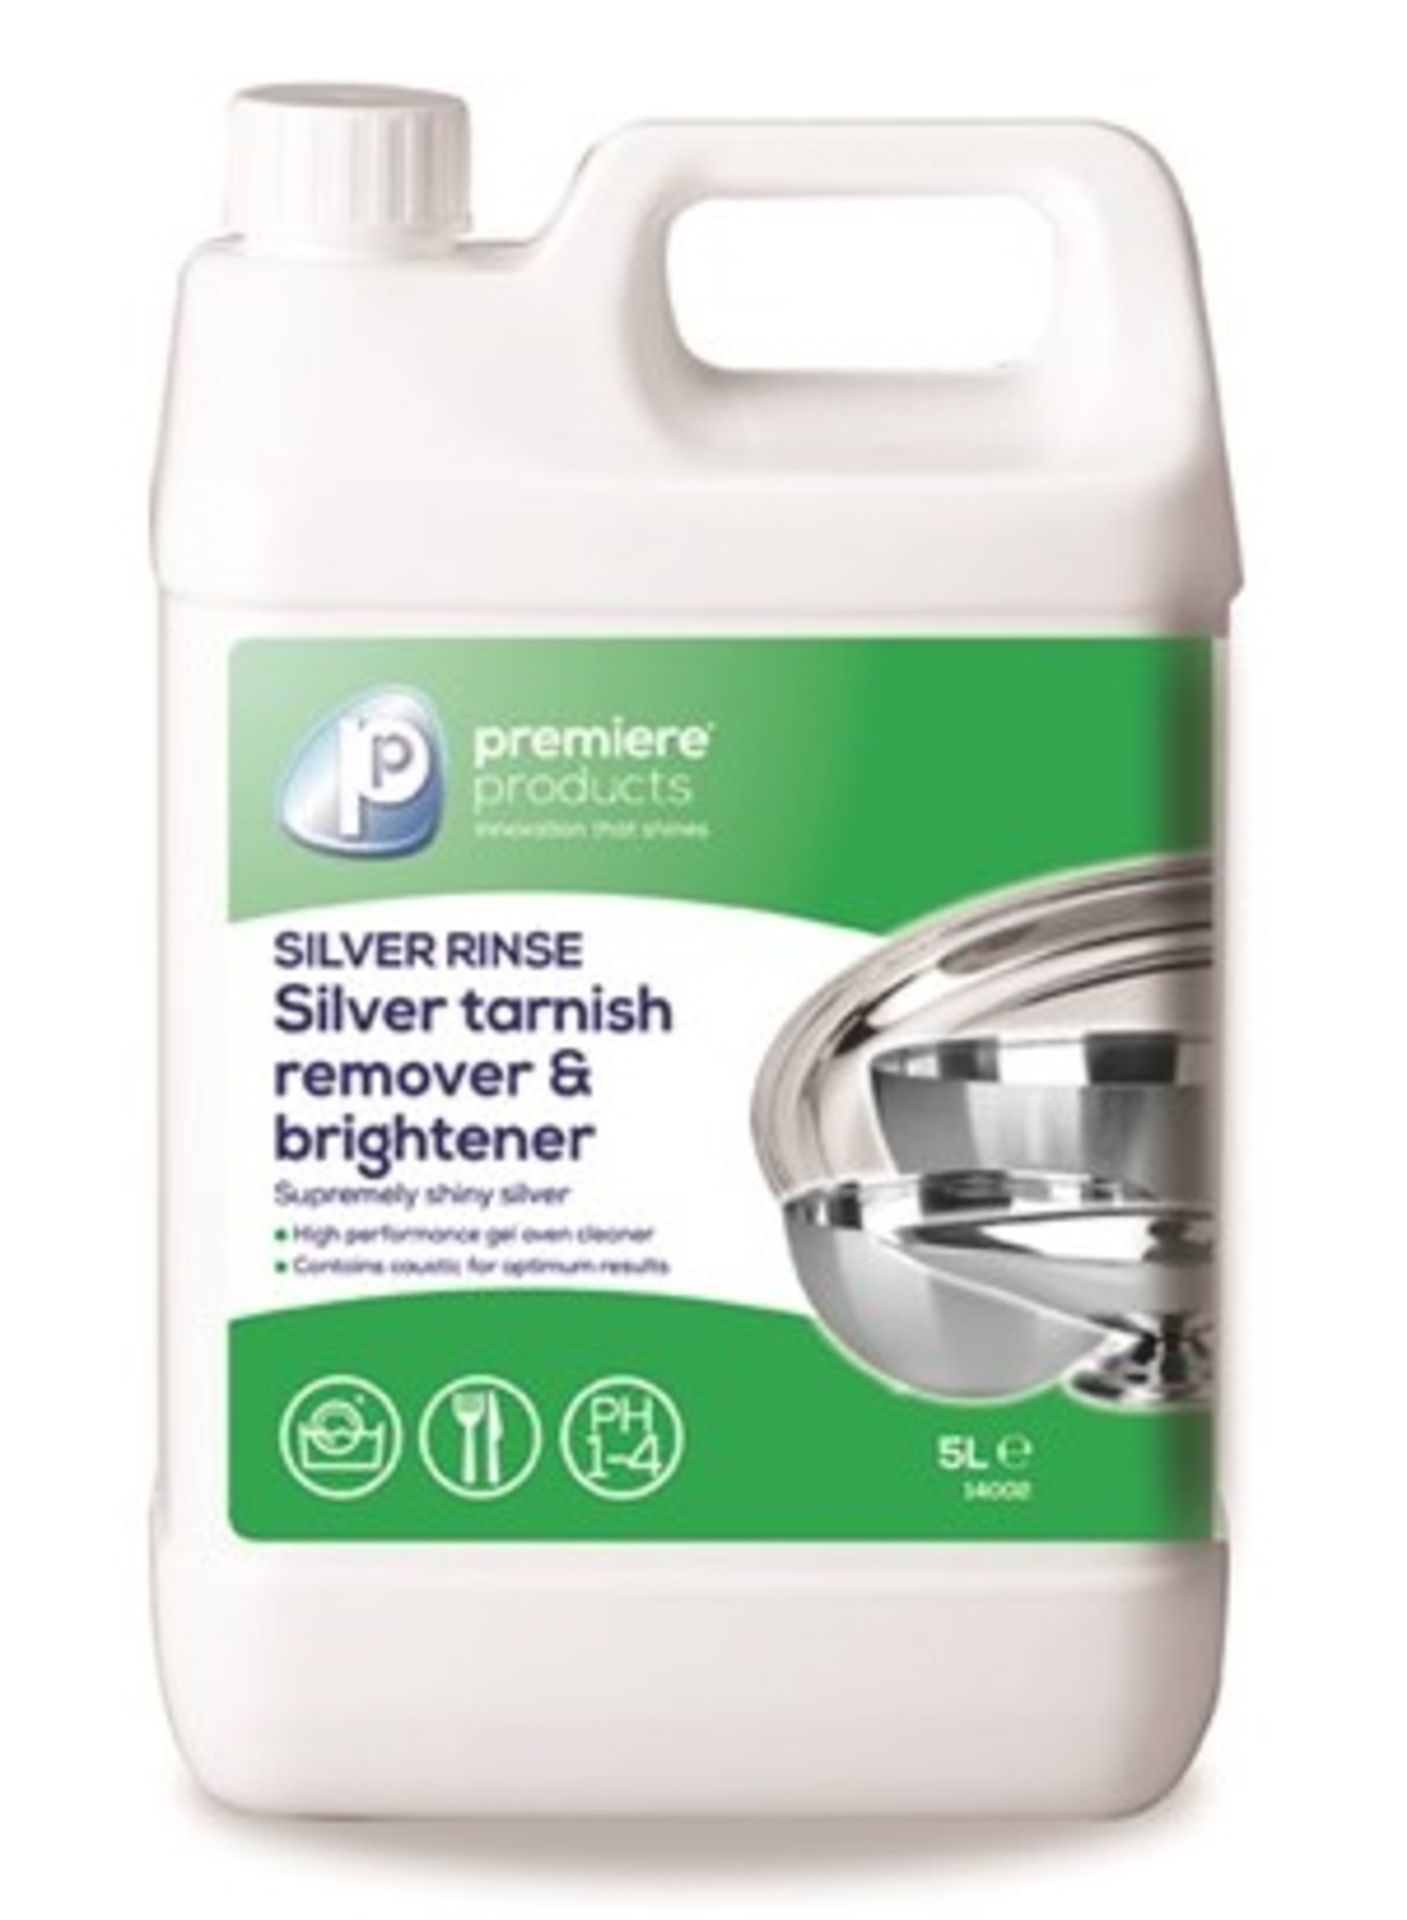 1 x Premiere 5 Litre Silver Rinse Tarnish Remover & Brightener - Premiere Products - Includes 1 x